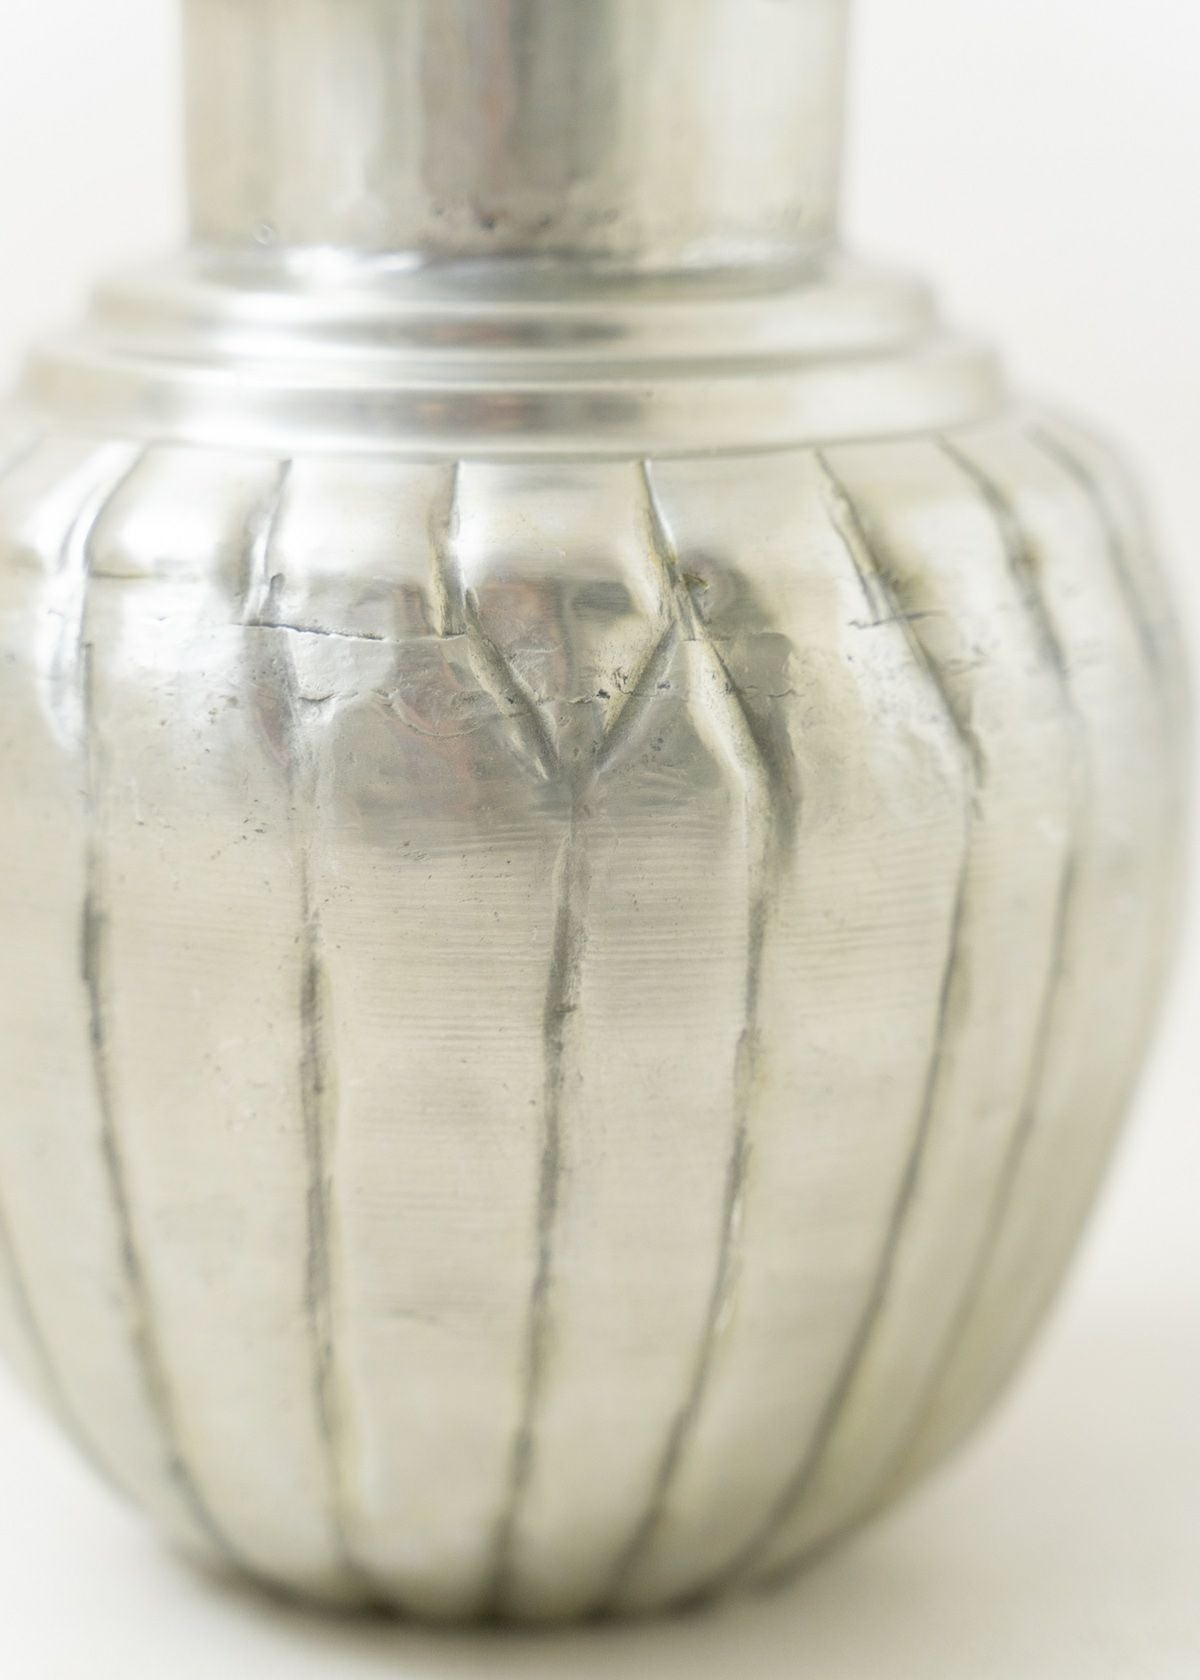 Aluminium Vase Ribbed Small